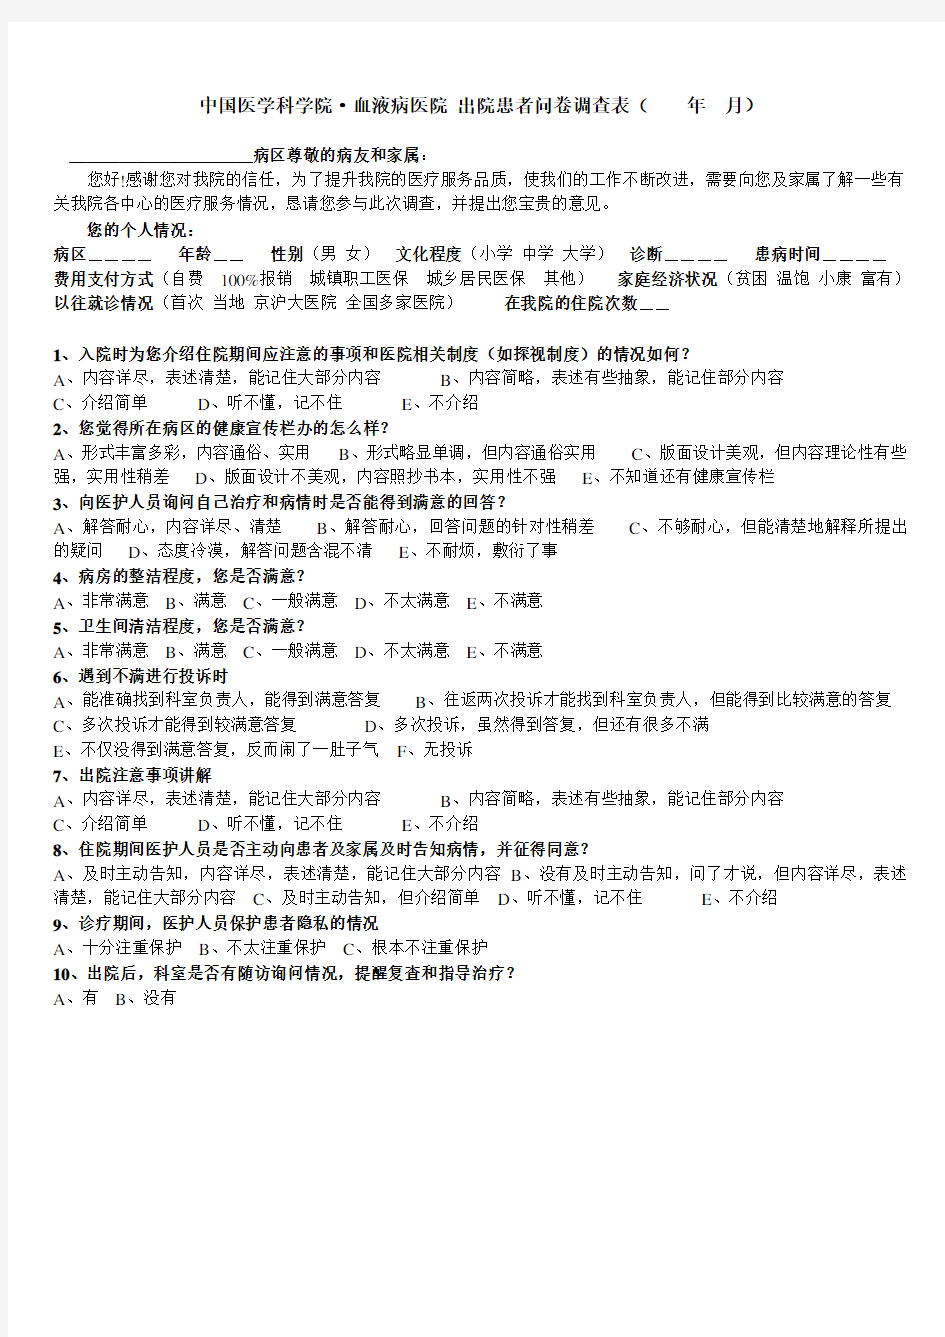 中国医学科学院·血液病医院出院患者问卷调查表(年月)